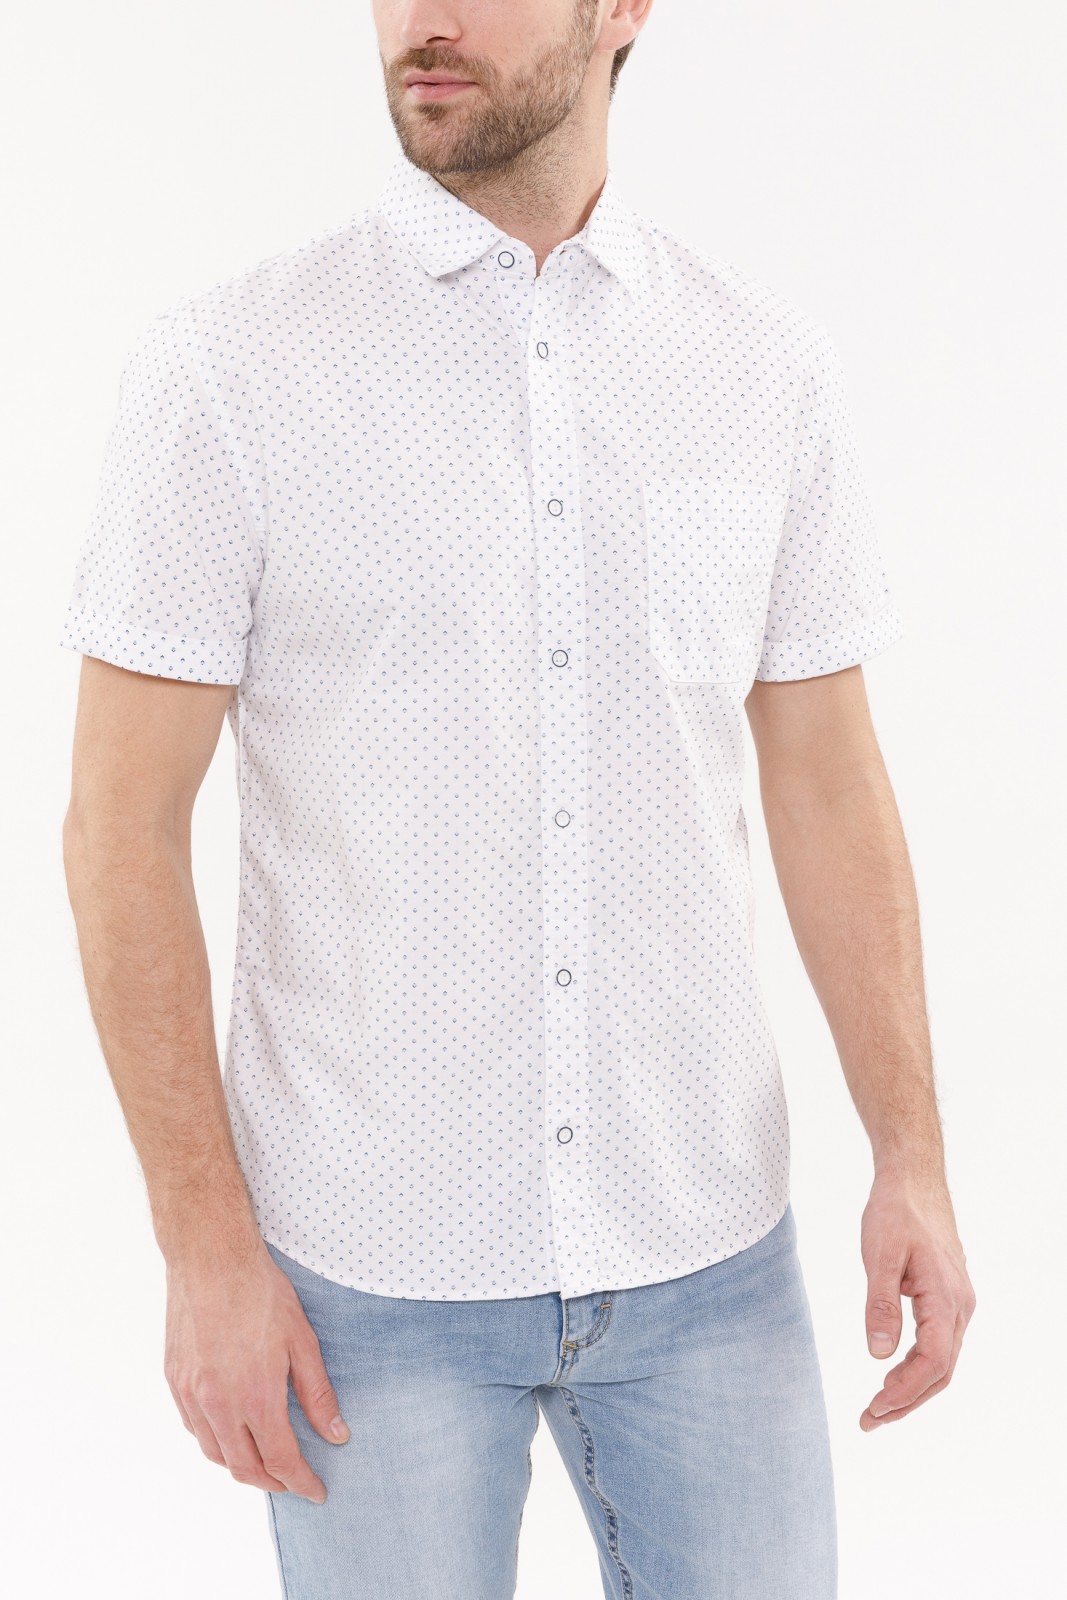 Рубашка с  короткими рукавами zolla 010232259211, цвет белый, размер S